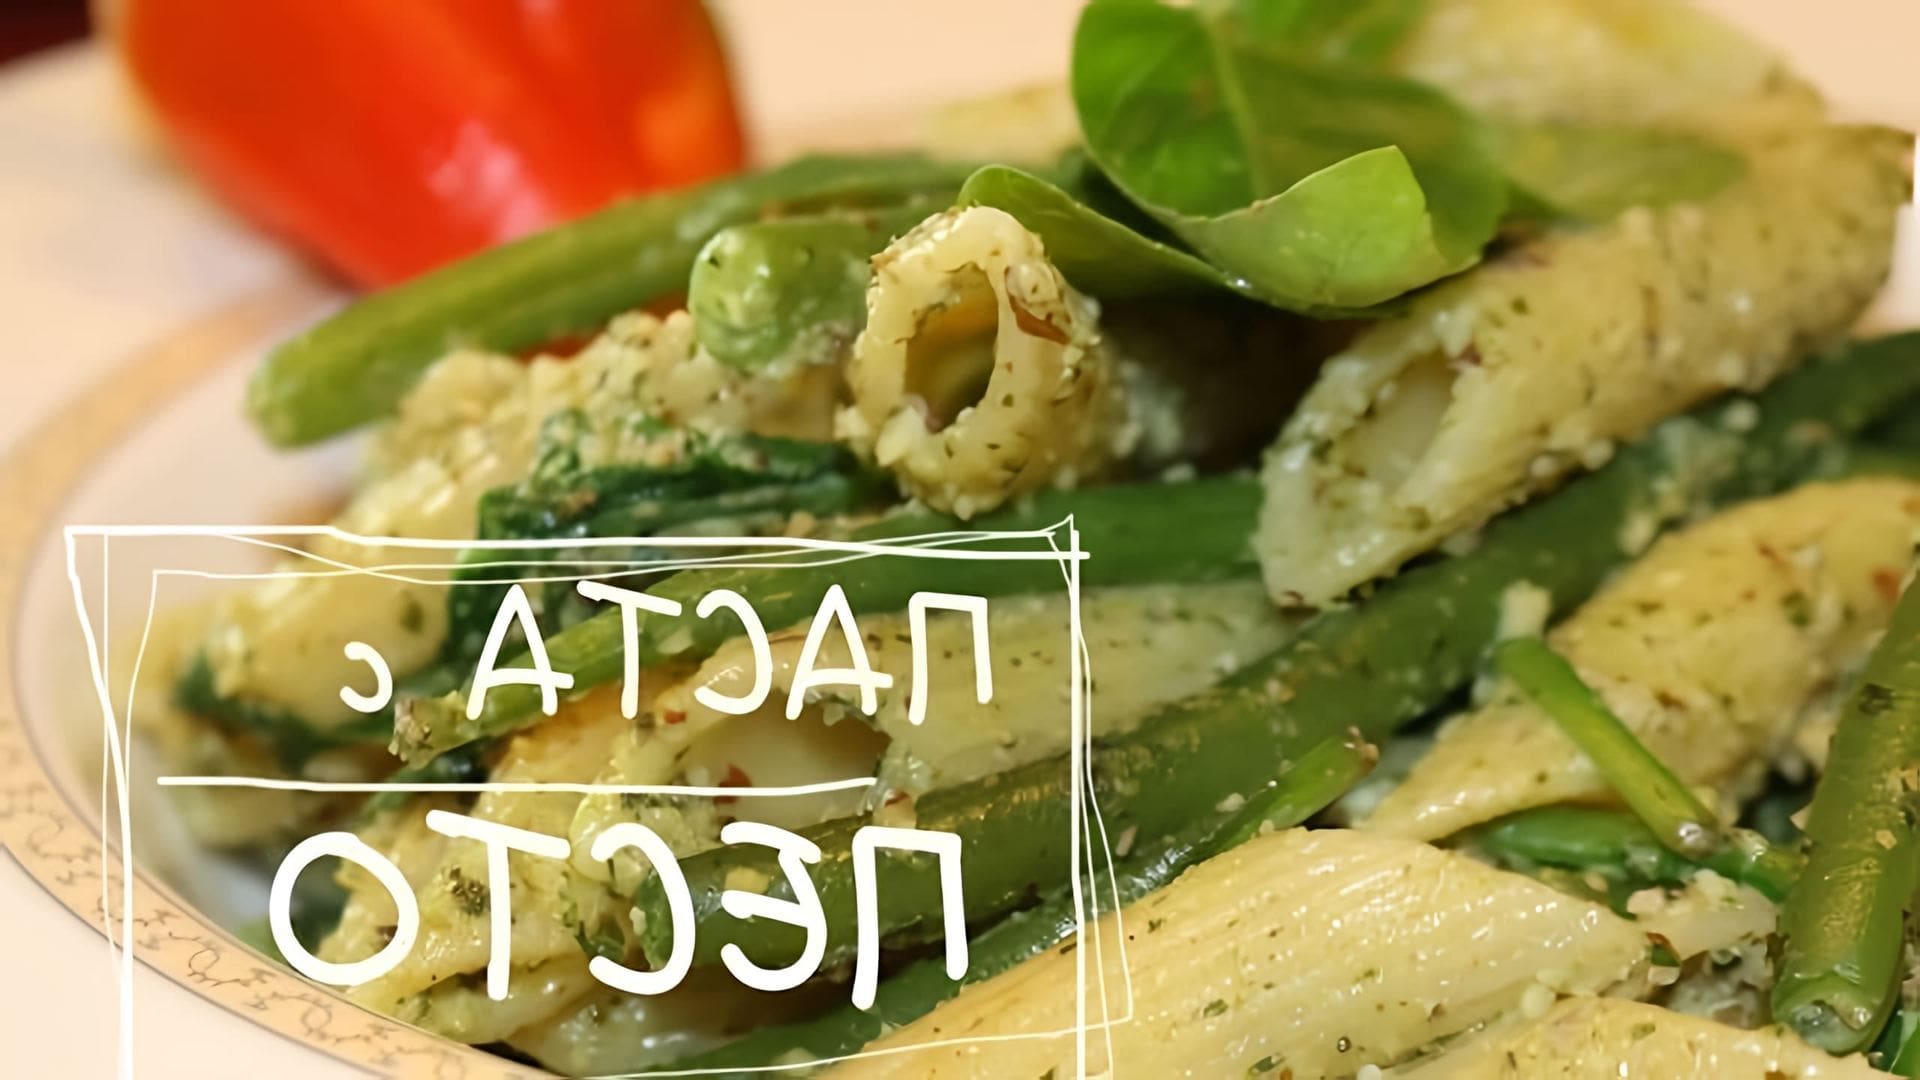 В этом видео демонстрируется рецепт приготовления пасты из стручков зеленого горошка со шпинатом и базиликом